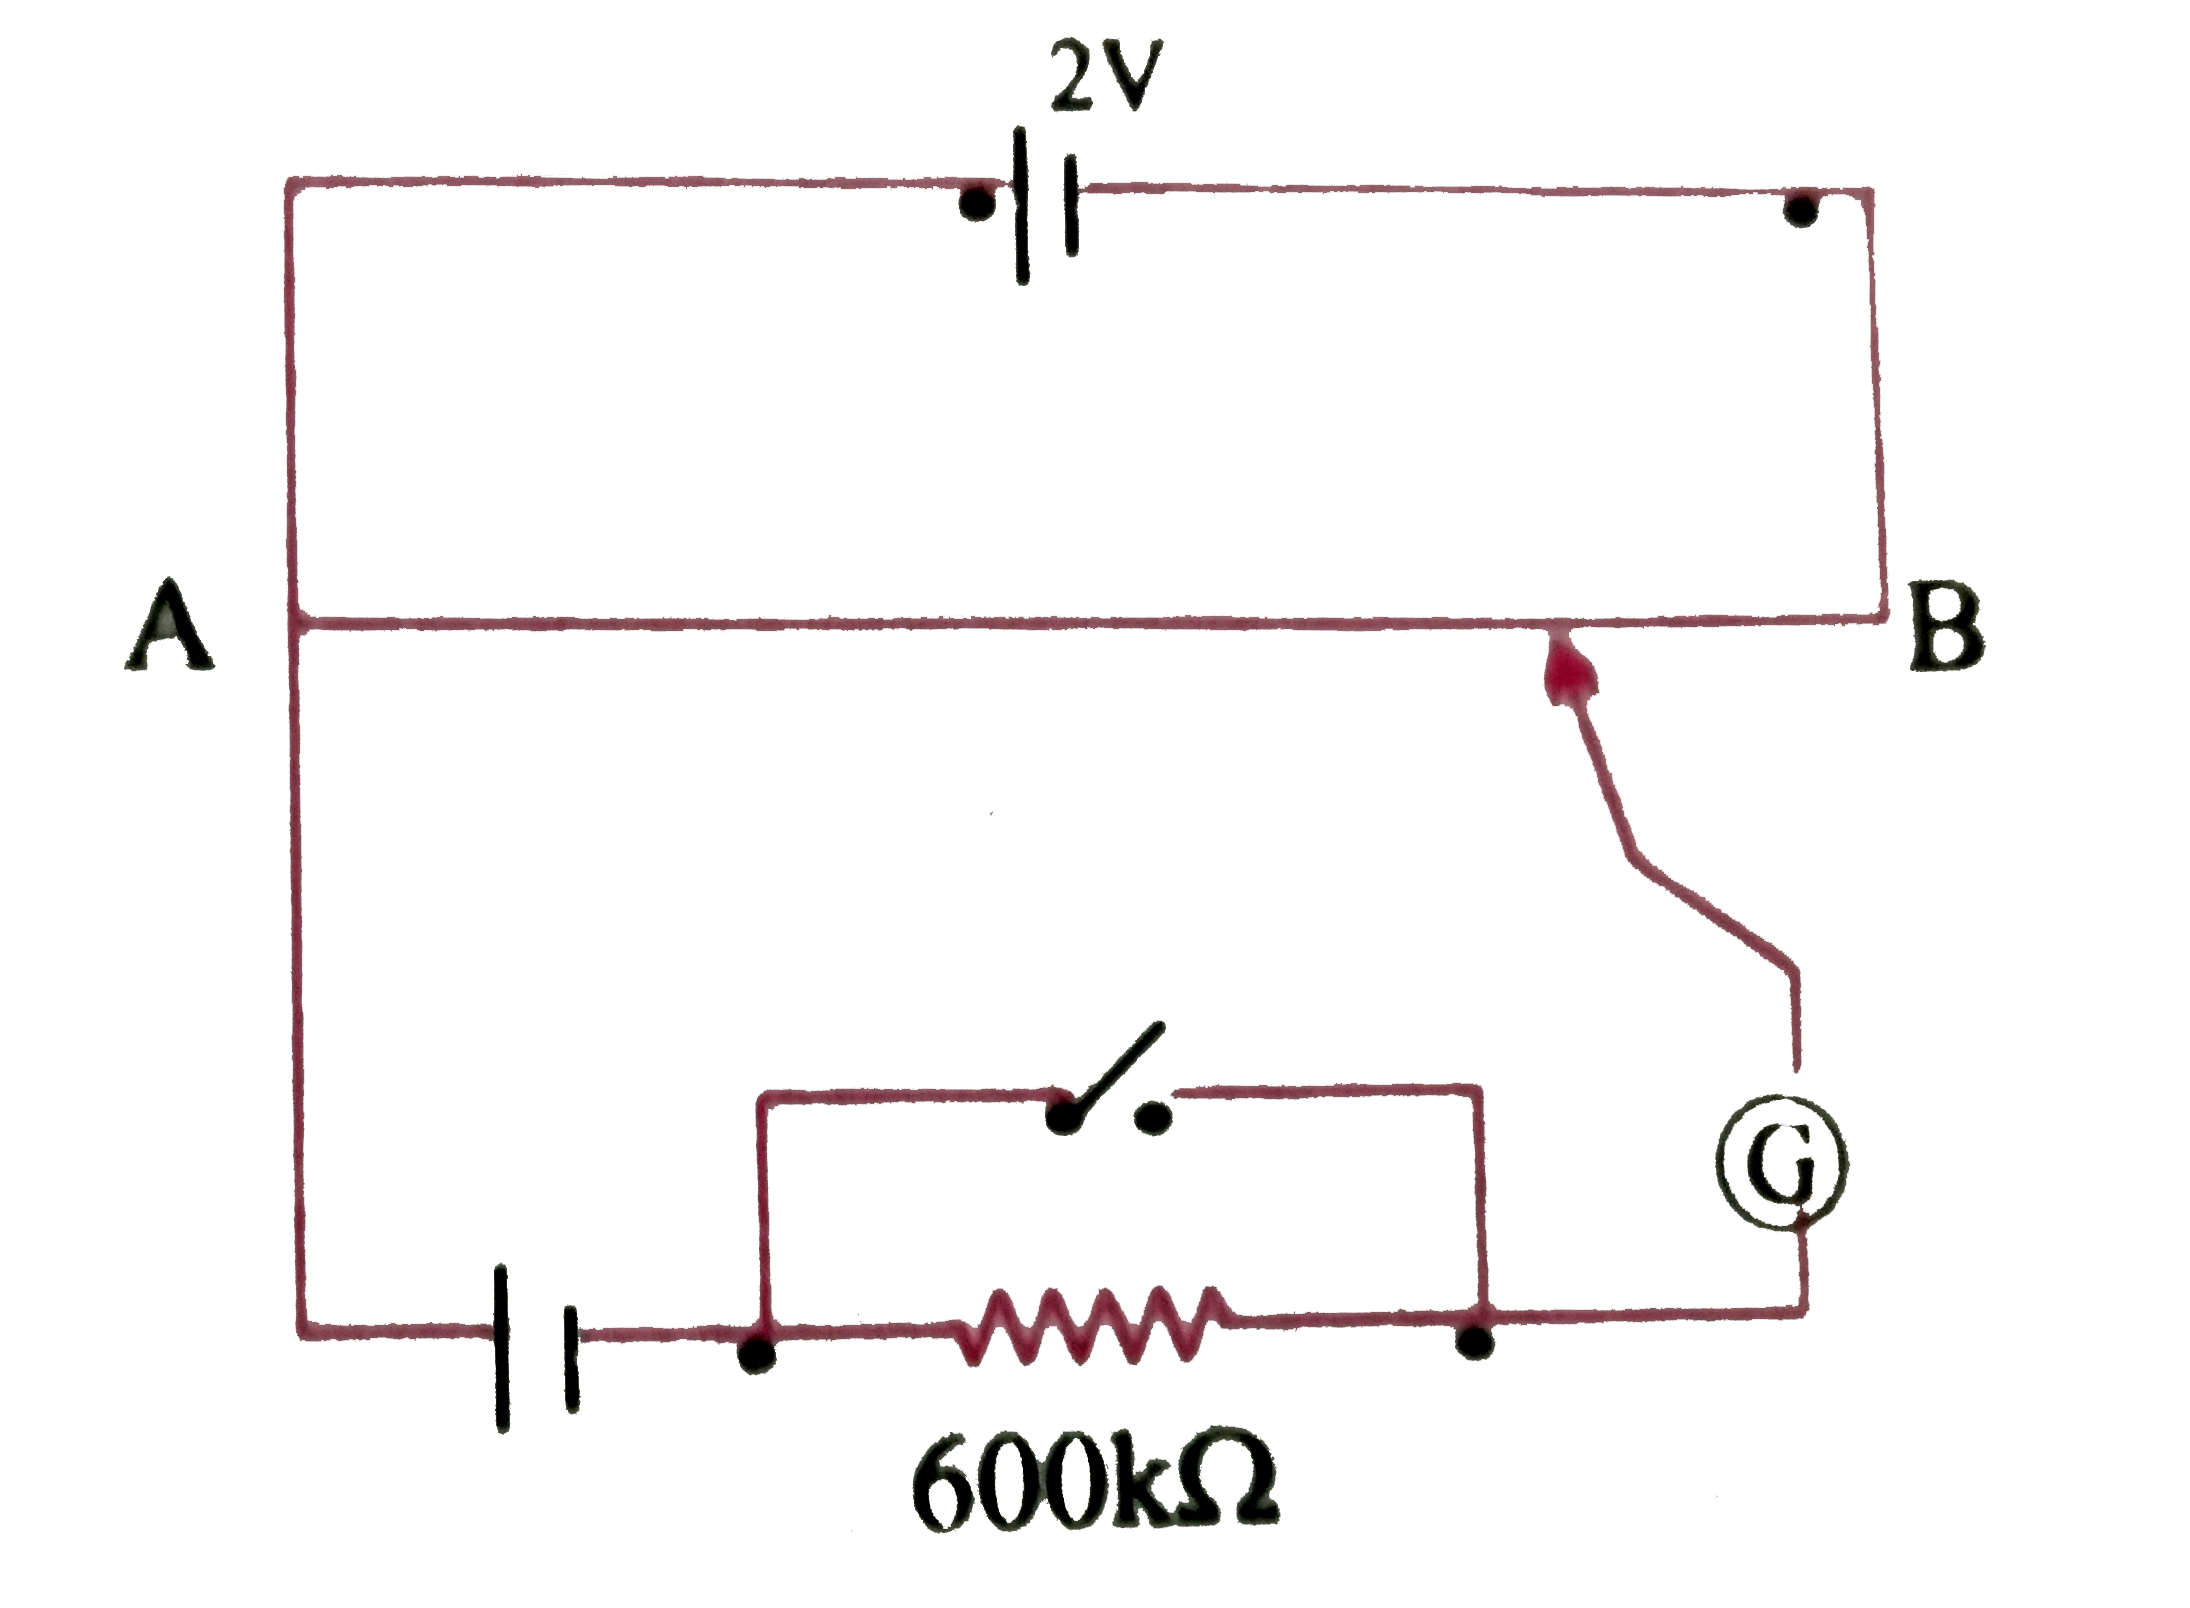 चित्र में एक वोल्ट्मीटर दर्शाए गया है  जिसमे एक 2.0V और आंतरिक प्रतिरोध 0.40 Omega  का कोई सेल  वोल्ट्मीटर  के प्रतिरोधक तार AB पर वोलटता पात बनाये  रखता है । कोई मानक सेल जो 1.02 V  का अचर  विद्युत  वाहक बल बनये रखता है ( कुछ  mA की बहुत  सामान्य  धाराओं के लिए ) तार की  67.3 सेमी लम्बाई  पर संतुलन बिंदु देती है । मानक सेल से अति न्यून धारा लेना  सुनिश्चित करने के लिए इसके साथ परिपथ में श्रेणी 600 k Omega  का एक अति उच्च प्रतिरोध इसके साथ  संबद्ध  किया जाता है , जिसके  संतुलन बिंदु प्राप्त होने के निकट  लघुपथित (Shorted) कर दिया जाता है । इसके बाद मानक  सेल को किसी  अज्ञात  विद्युत बल के सेल को किसी अज्ञात  विद्युत वाहक बल  के सेल से प्रतिस्थापित कर दिया जाता  है । जिससे संतुलन बिंदु तार की 82.3 सेमी लम्बाई पर प्राप्त  होता है ।    (f ) क्या  यह परिपथ कुछ  की कोटि के अत्यल्प विद्युत   वाहक बलों ( जैसे की किसी  प्रारूपी  तापवैद्युत युग्म का विद्युत वाहक बल )  के निर्धारण में सफल होगी ? यदि नहीं तो आप इसमें किस प्रकार संसोधन करेंगे ?